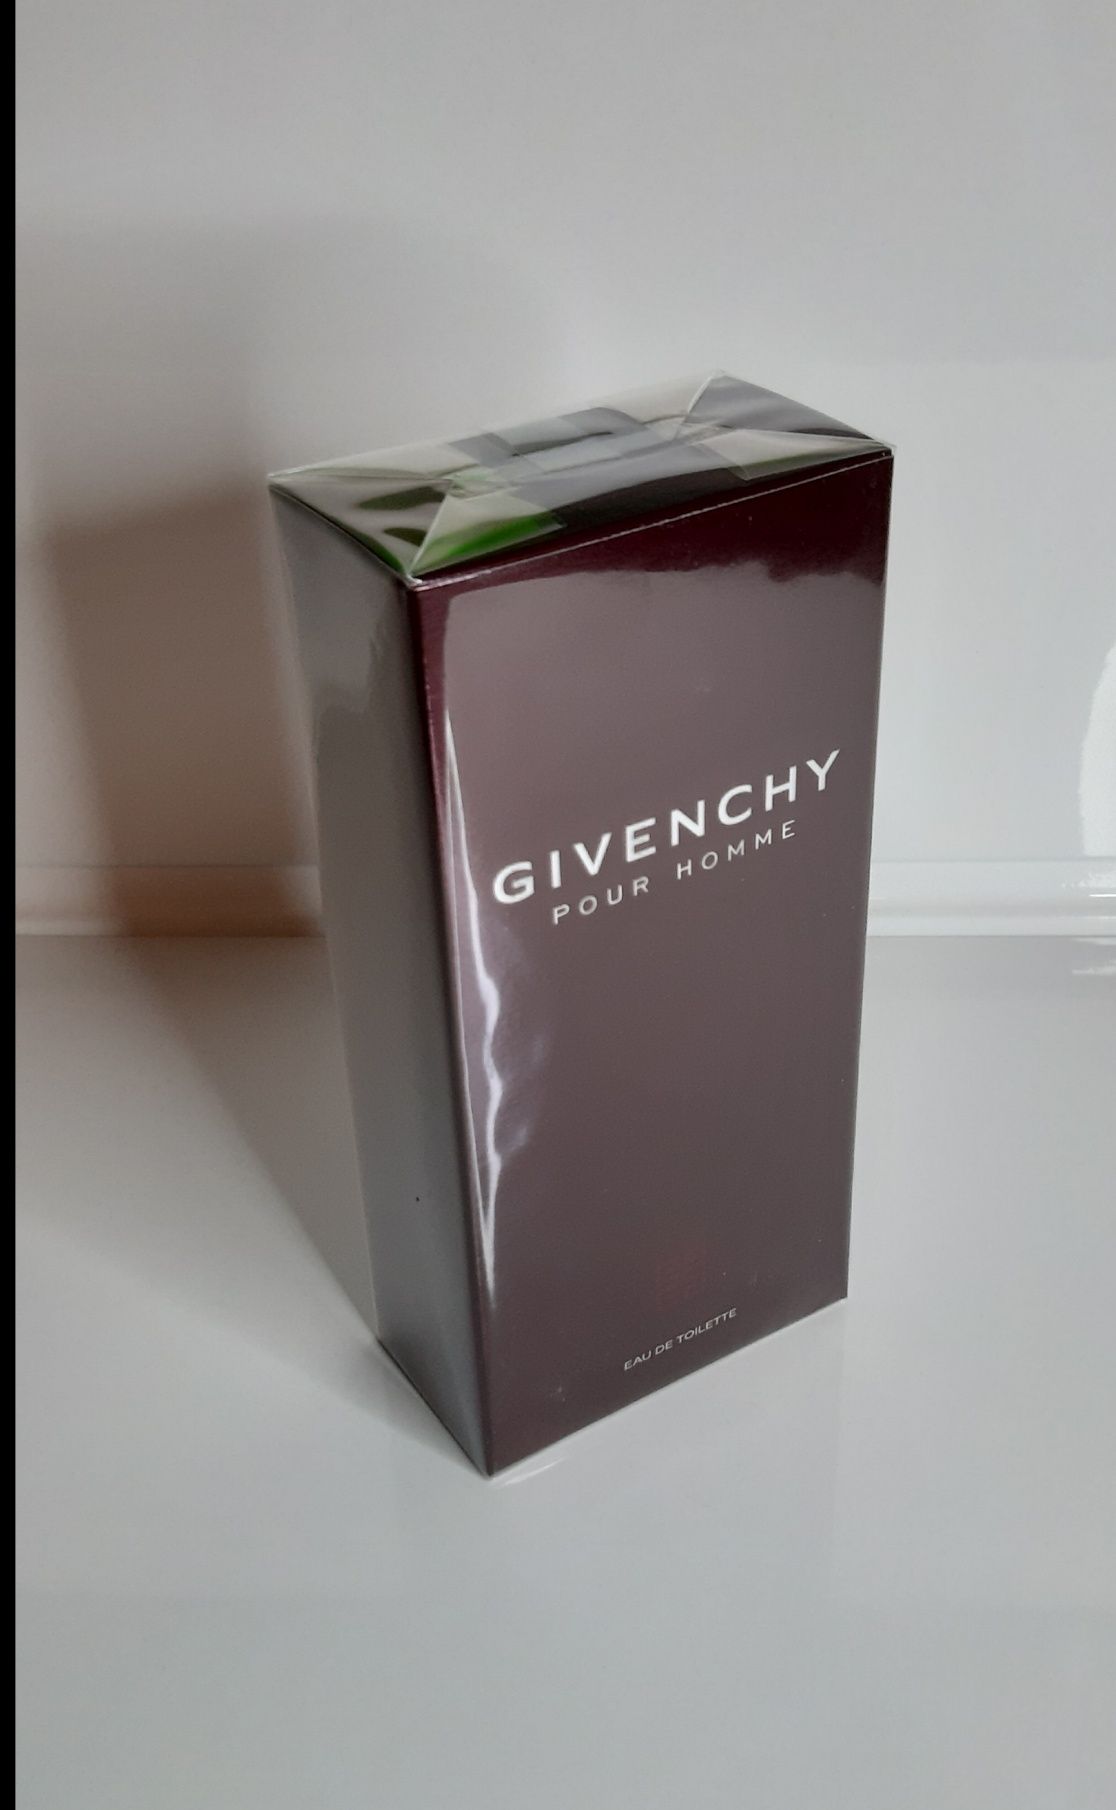 (Oryginał) Givenchy Pour Homme 100ml (Możliwy Odbiór osobisty)